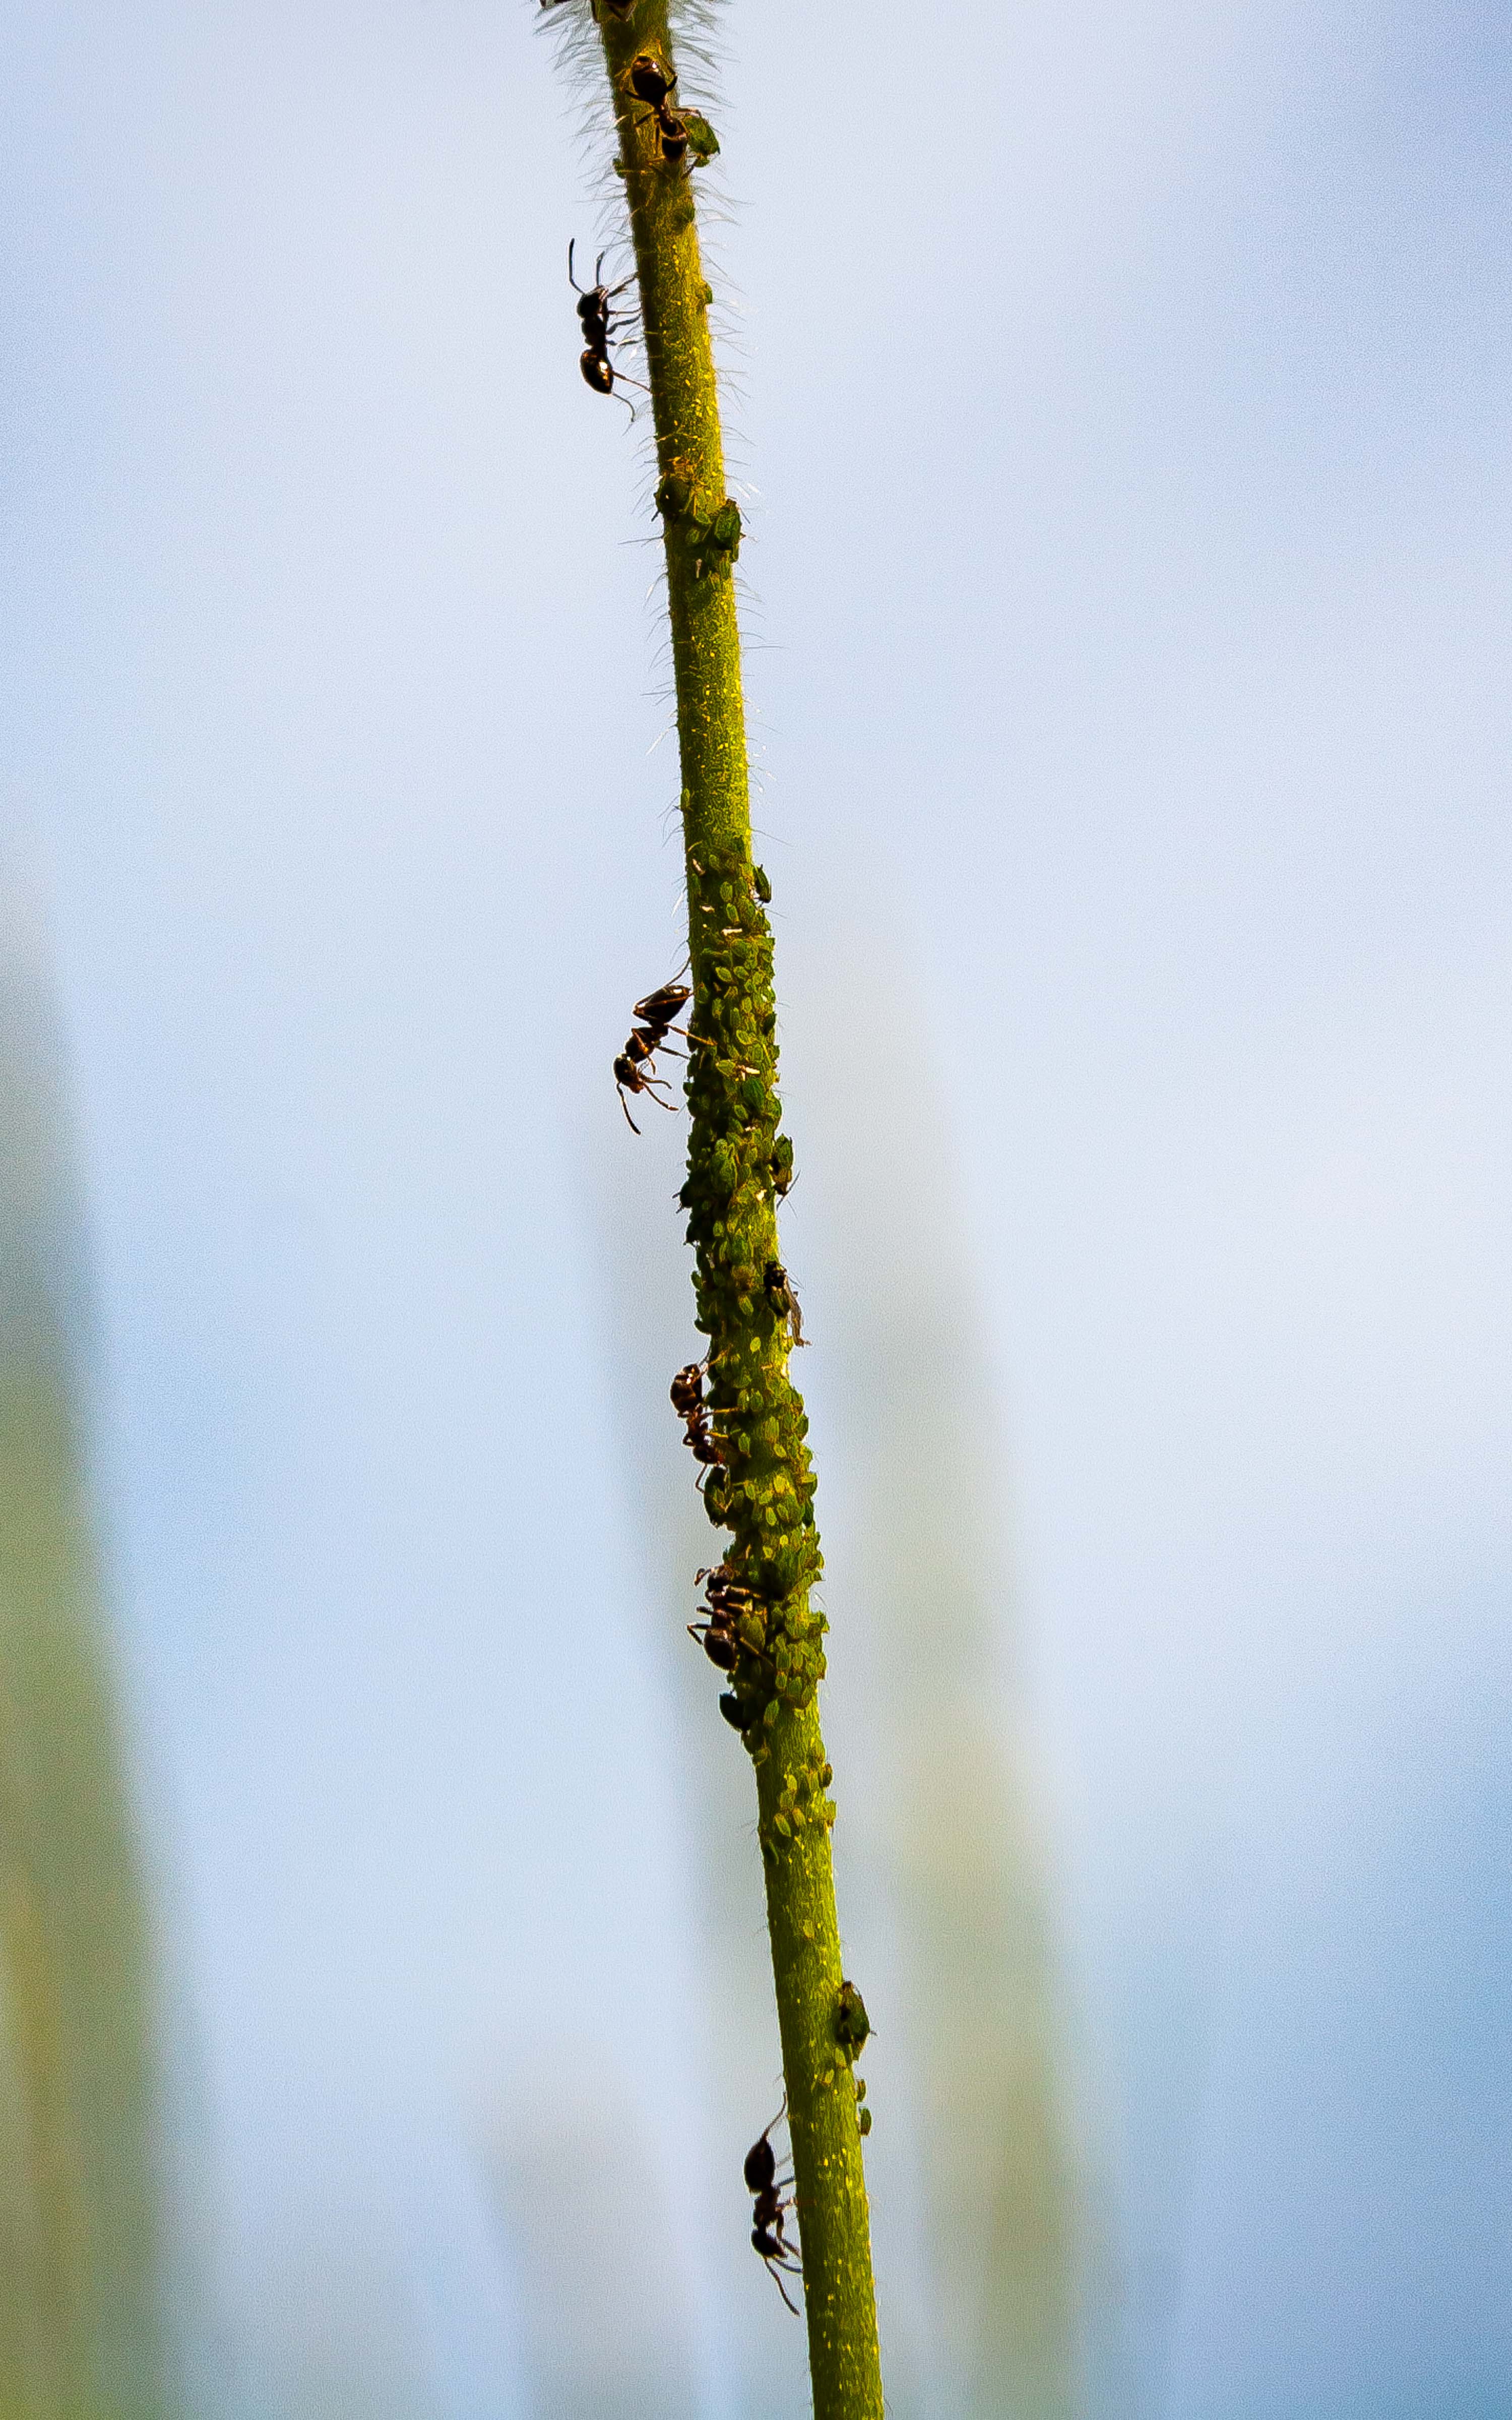 Slovenia, Metlika Prov, Ants On Flower Stem, 2006, IMG 7410